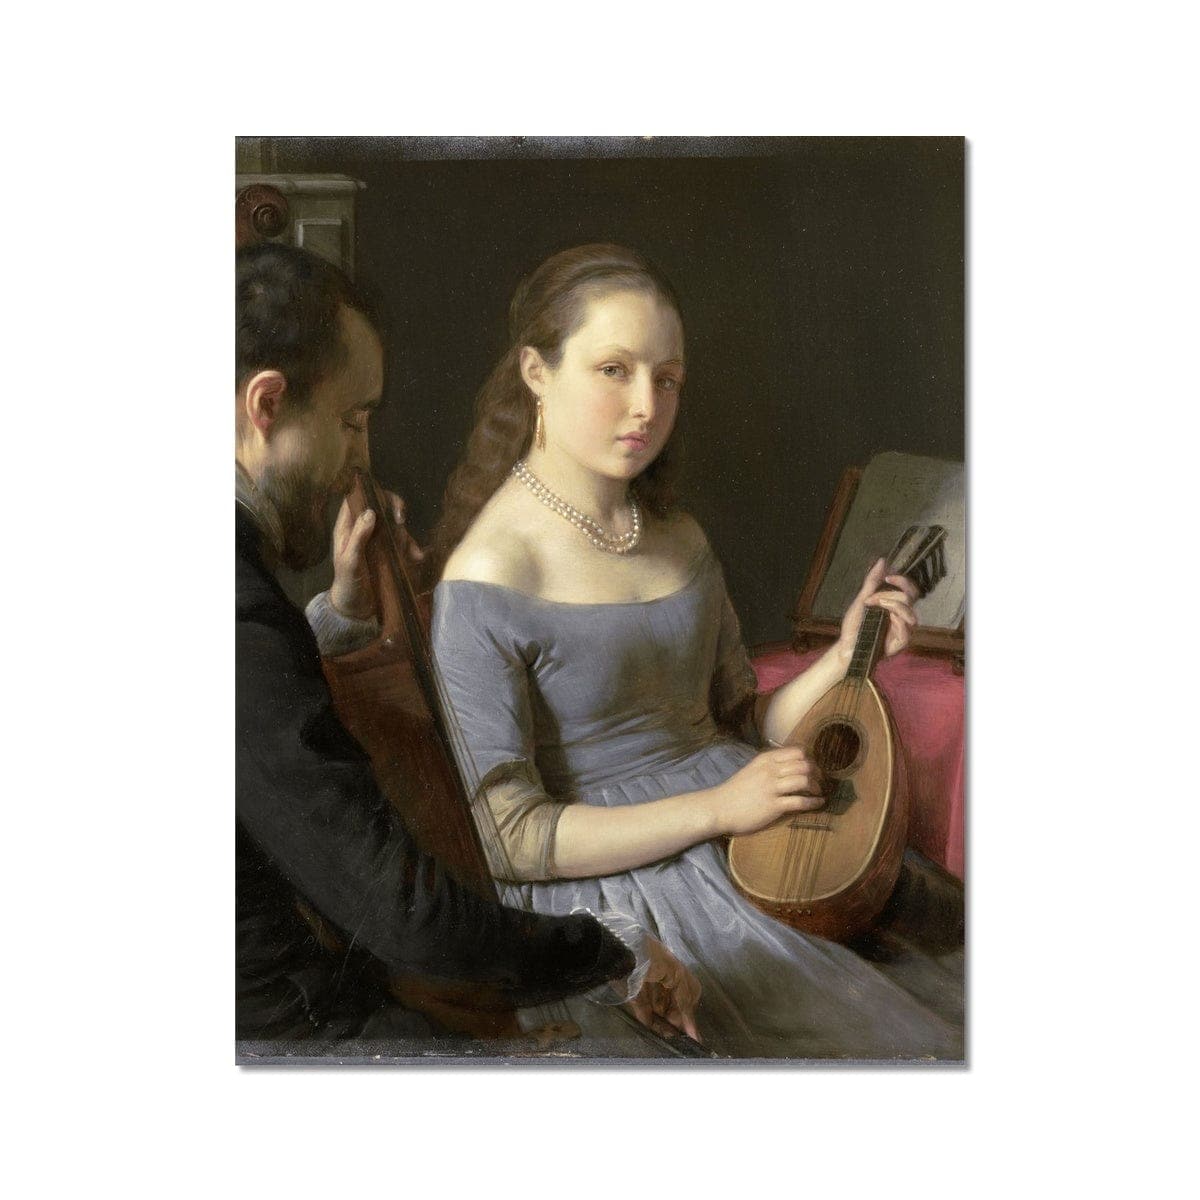 The Duet, Charles van Beveren, 1830 - 1850 Hahnemühle Photo Rag Print